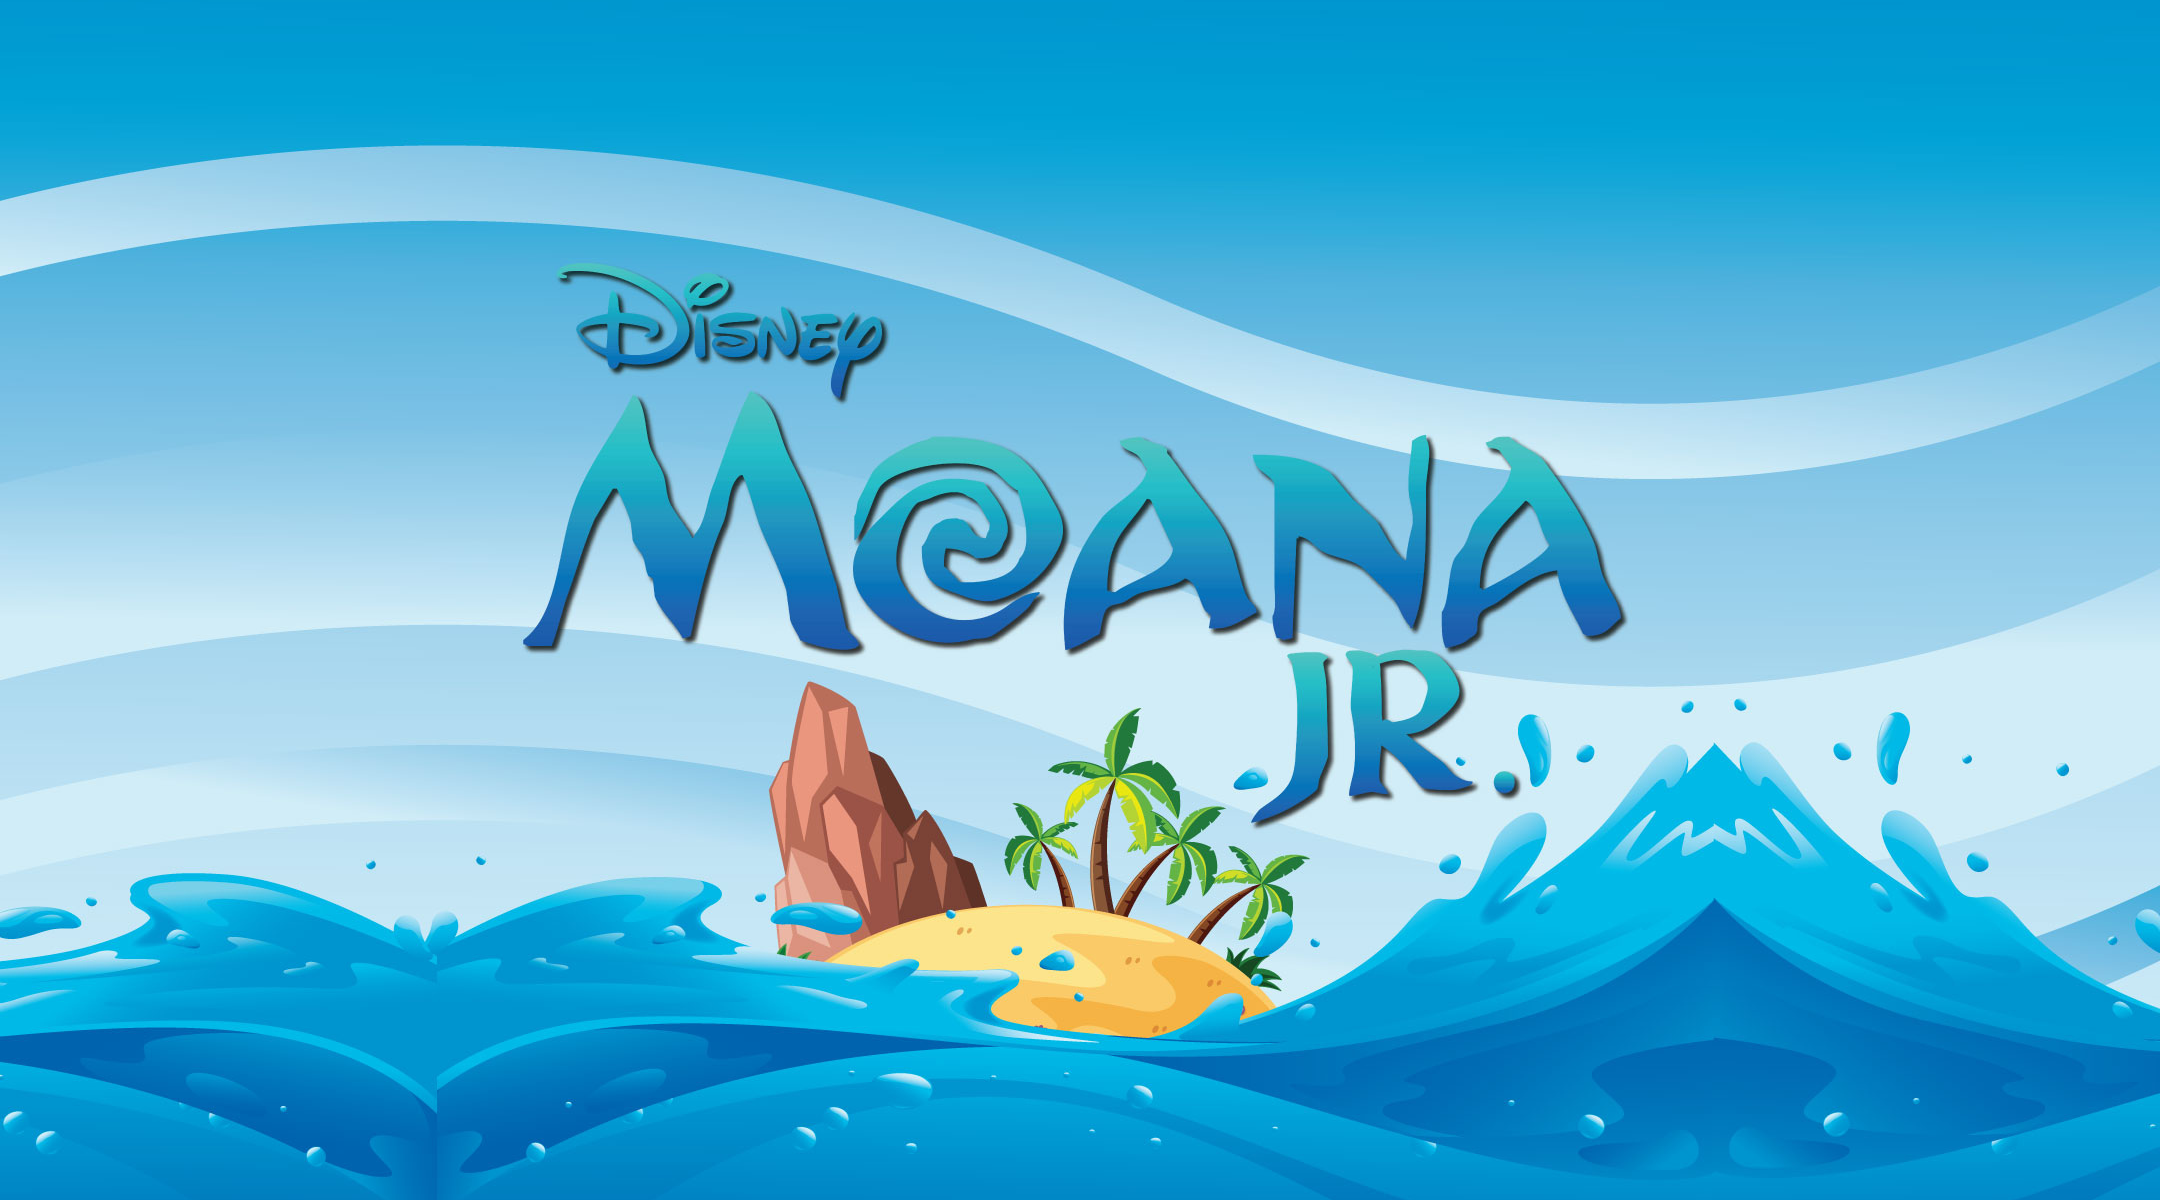 disney's moana jr logo